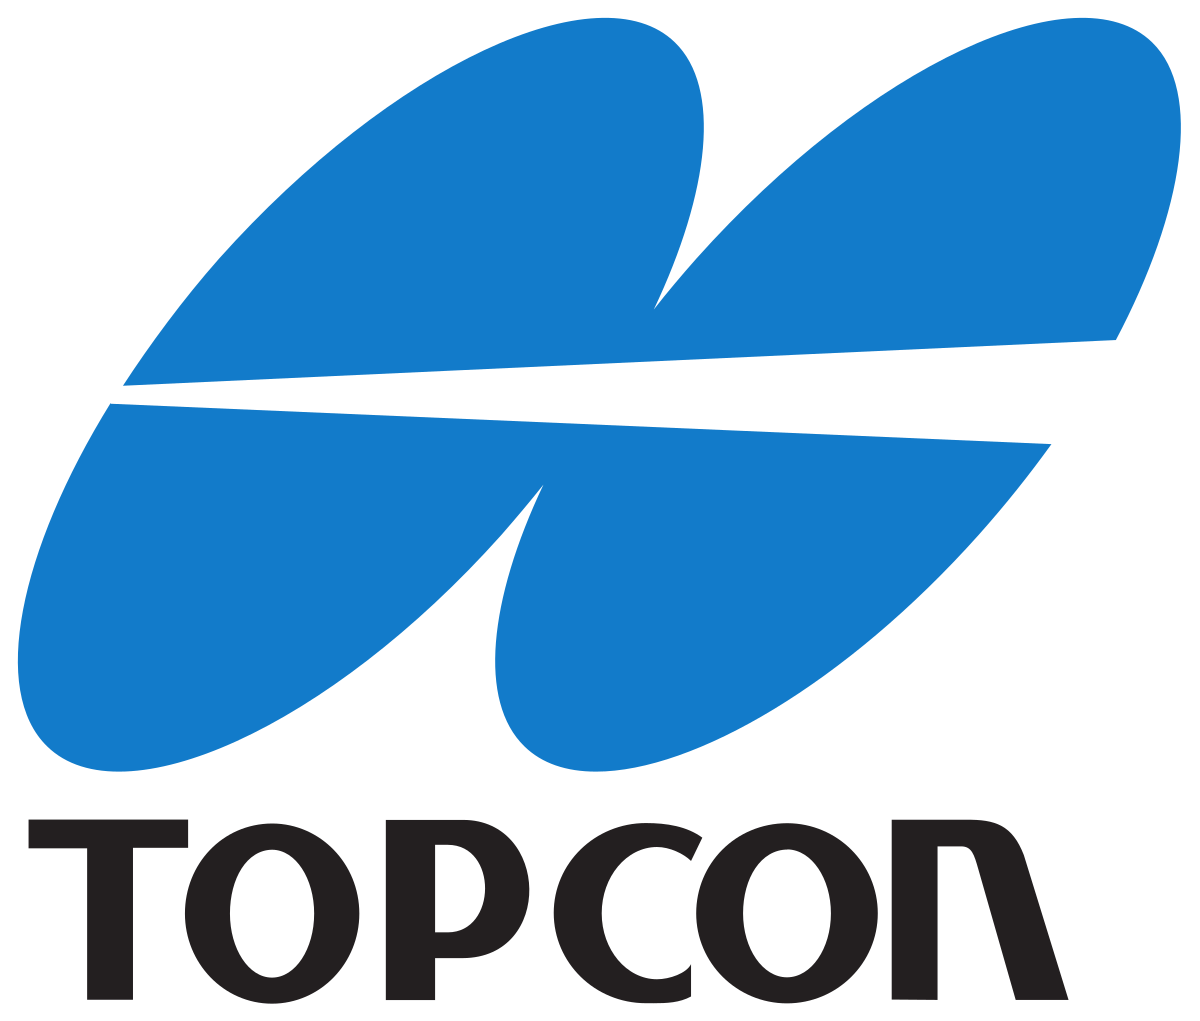 TOPCON LOGO